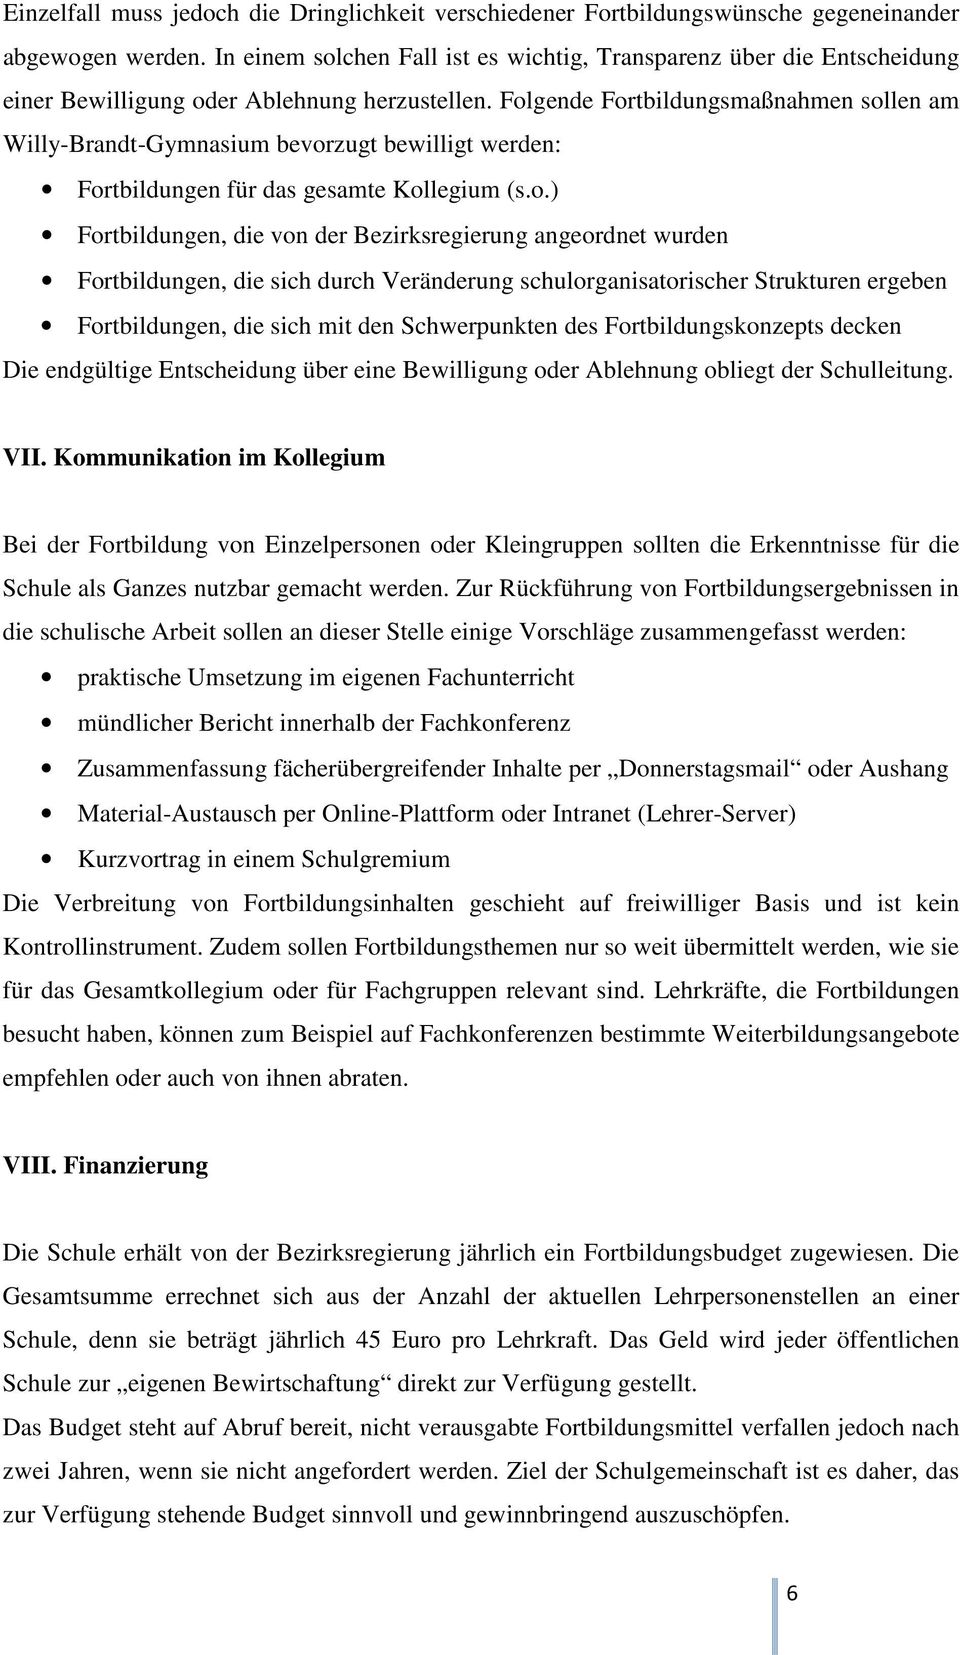 Folgende Fortbildungsmaßnahmen sollen am Willy-Brandt-Gymnasium bevorzugt bewilligt werden: Fortbildungen für das gesamte Kollegium (s.o.) Fortbildungen, die von der Bezirksregierung angeordnet